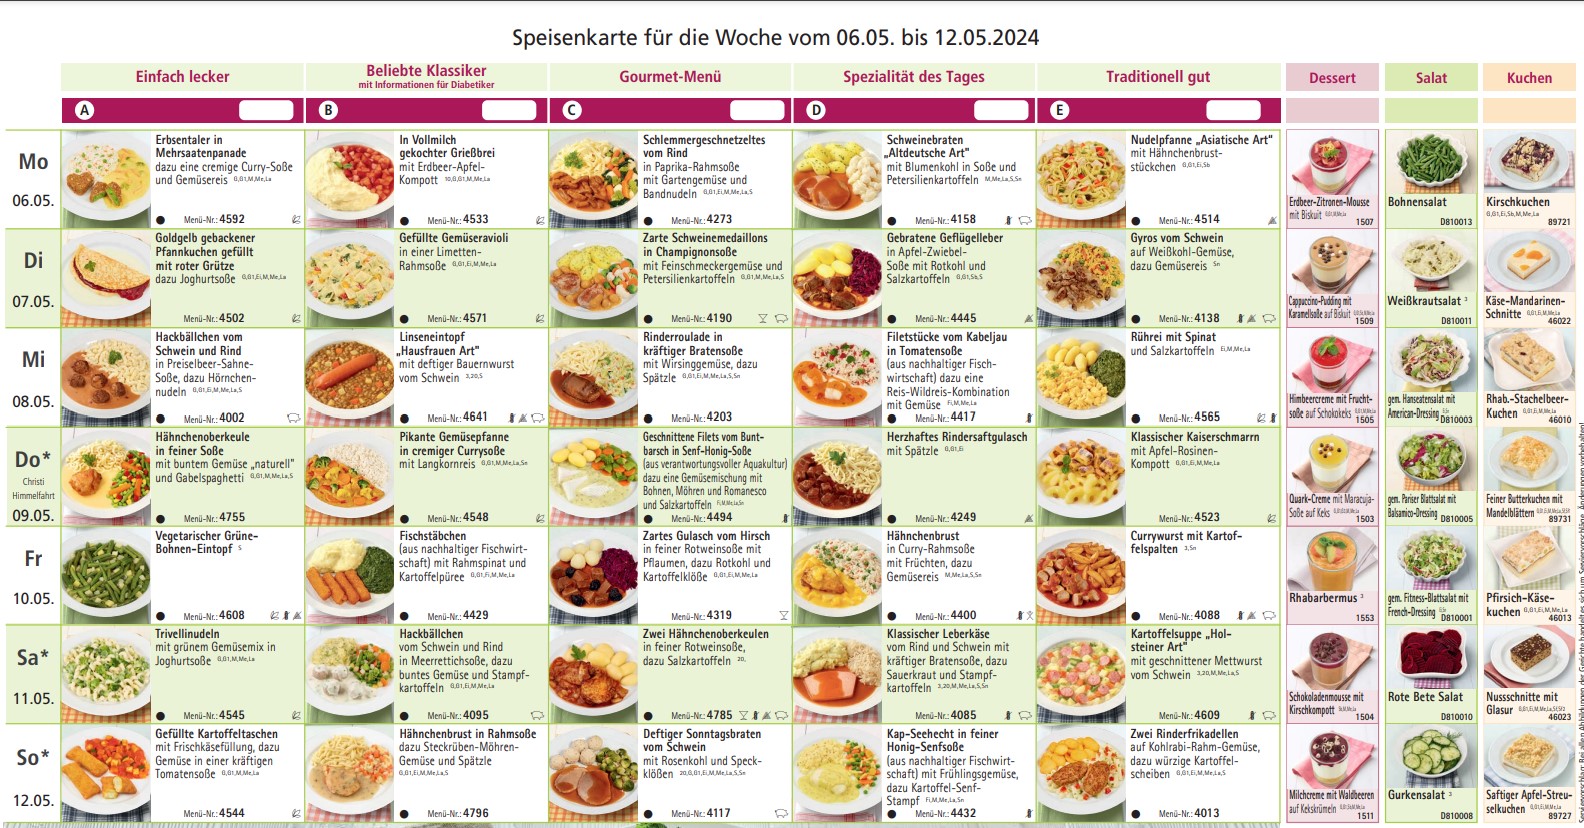 Speisenkarte für die Kalenderwoche 18
vom 06.05. bis 11.05.2024.